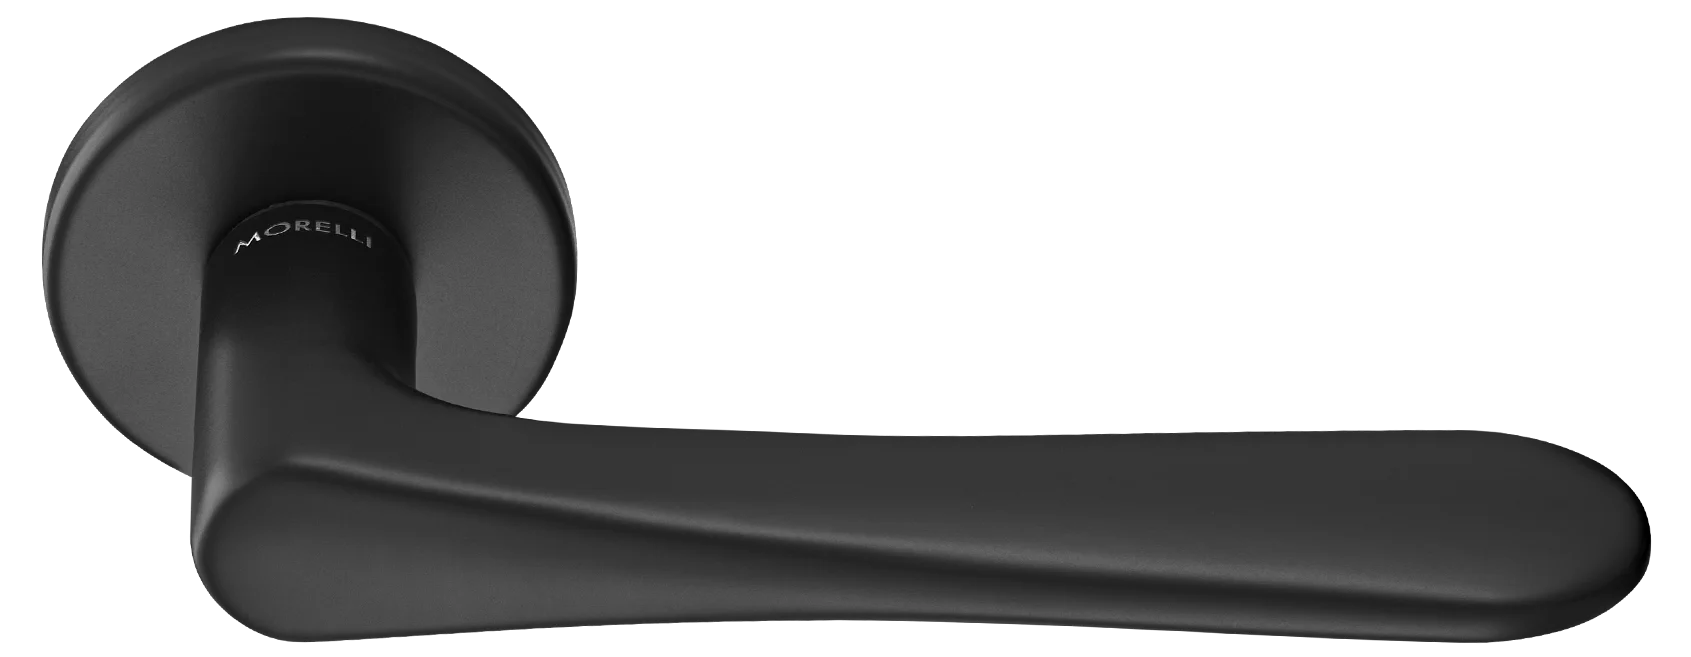 AULA R5 NERO, ручка дверная на розетке 7мм, цвет -  черный фото купить Волгоград